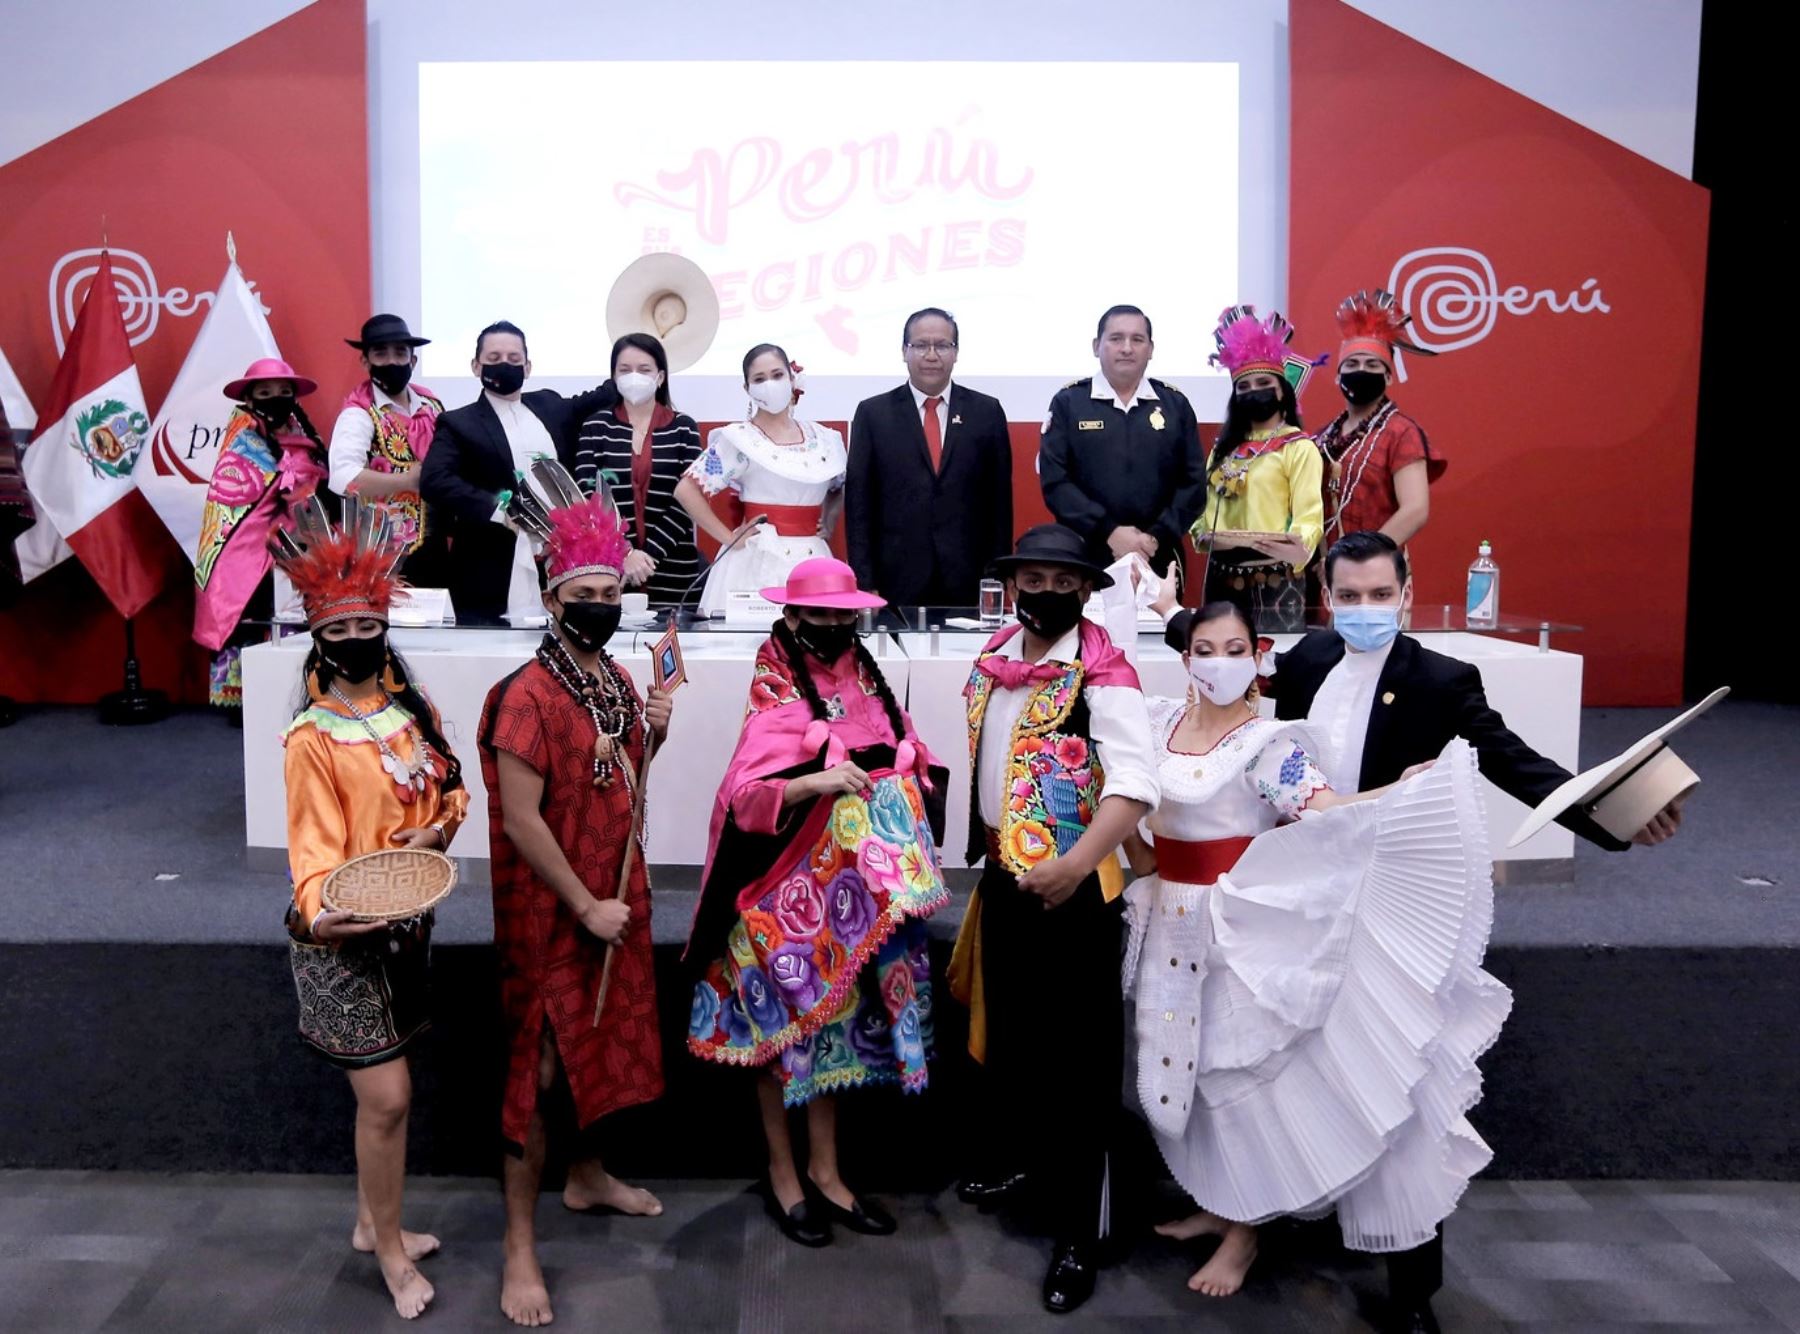 Más de 60 localidades participarán de "El Perú es sus regiones", la iniciativa que lanzó hoy el Mincetur y que busca promover el turismo, la artesanía y la gastronomía peruana durante el feriado por Fiestas Patrias. ANDINA/Difusión